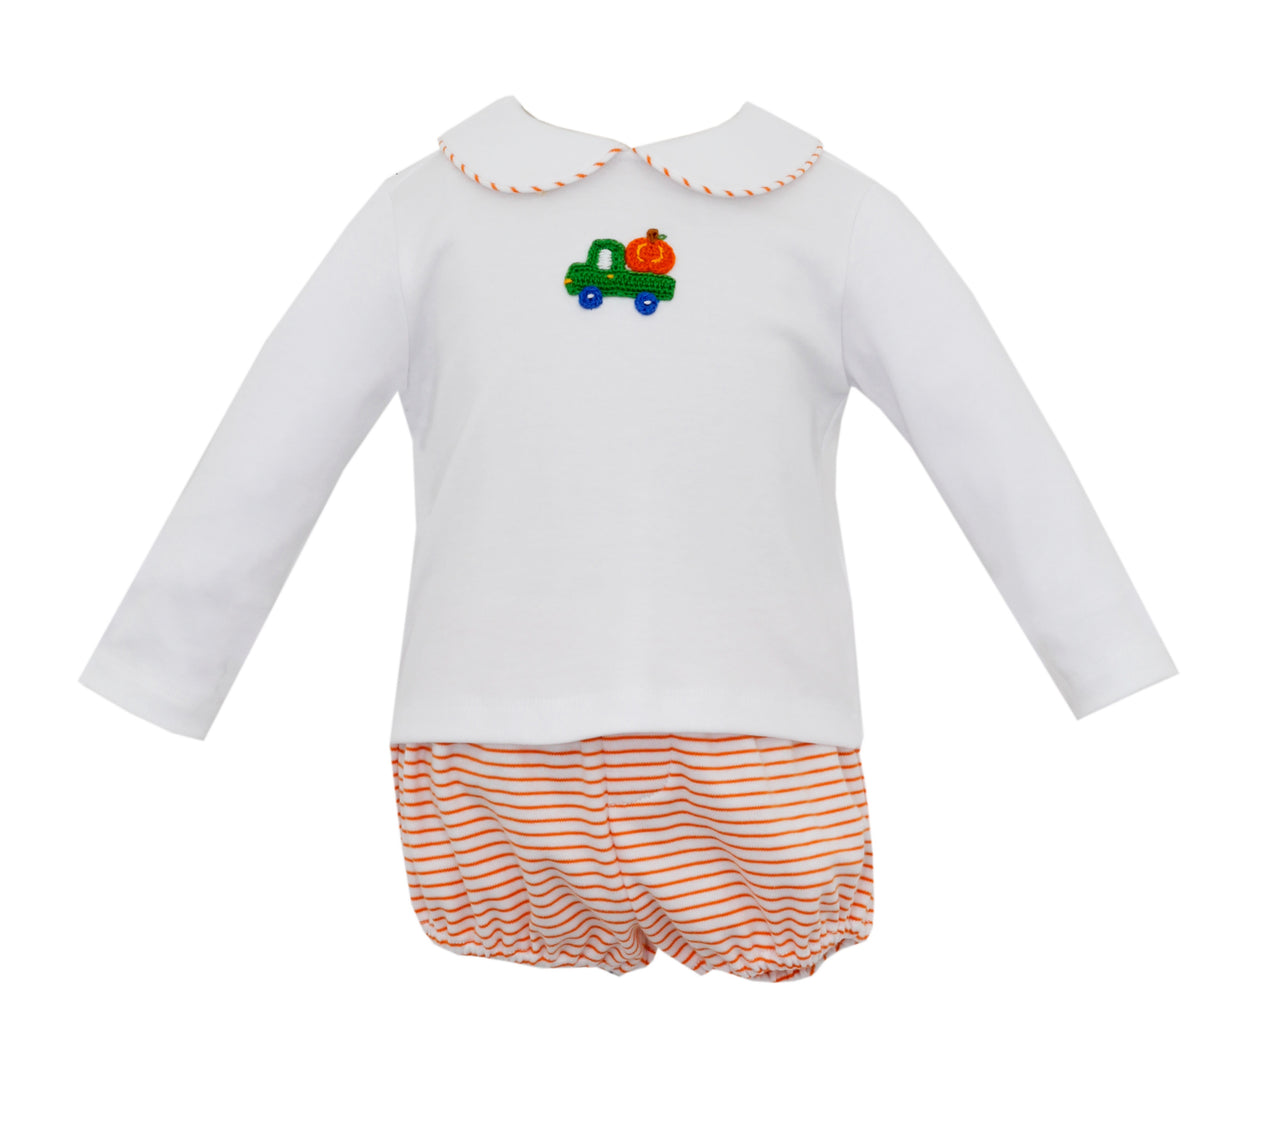 Petit bebe Pumpkin Crochet Boy's Diaper Set W/White Shirt L/S Orange & white Knit 470M-MF23 5009